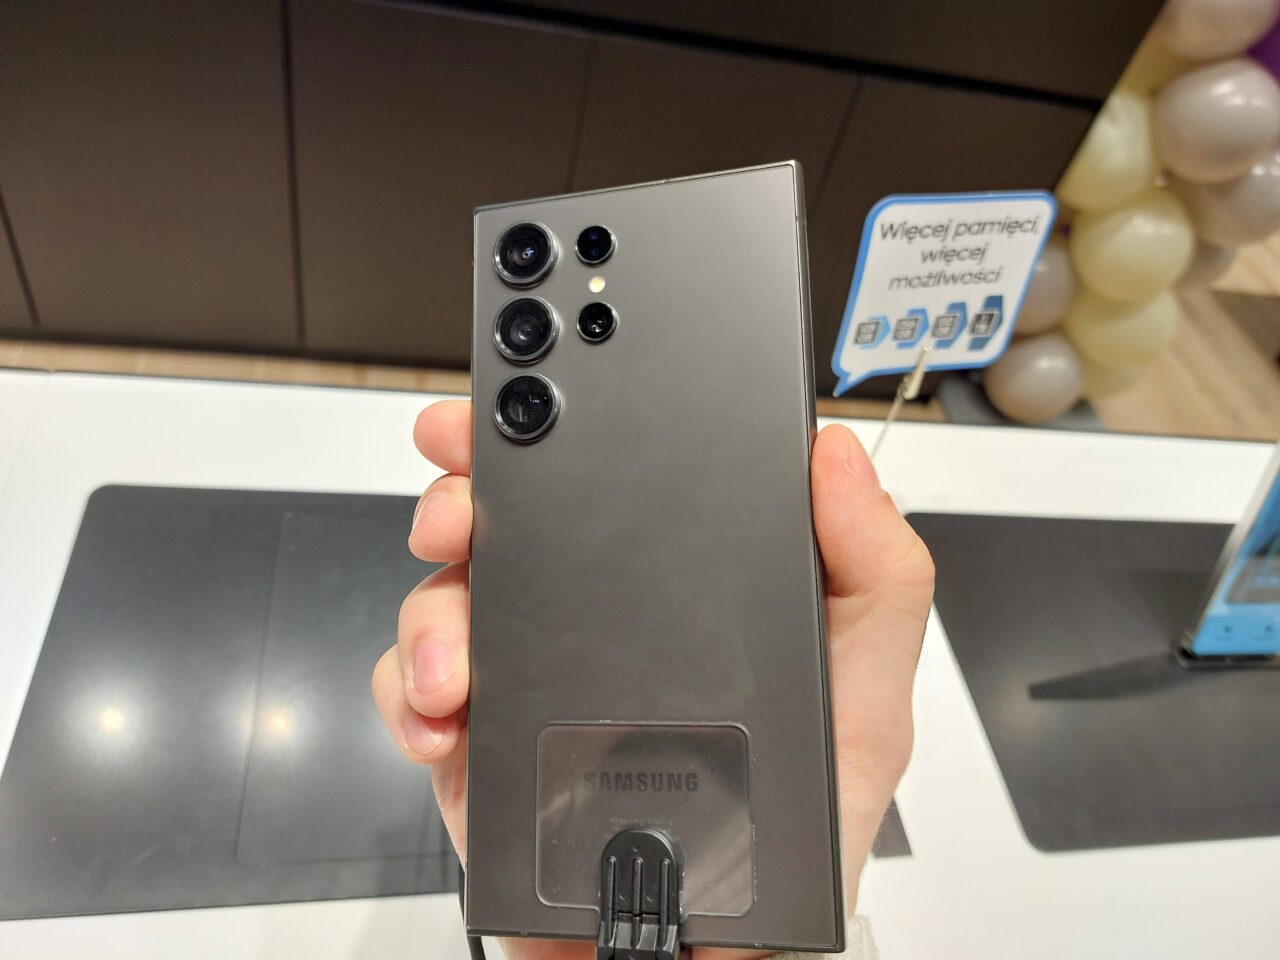 Czarna tylna część smartfona Samsung z pięcioma obiektywami kamery trzymana w dłoni, w tle fragment sklepu z reklamą o większej pamięci i wydajności.